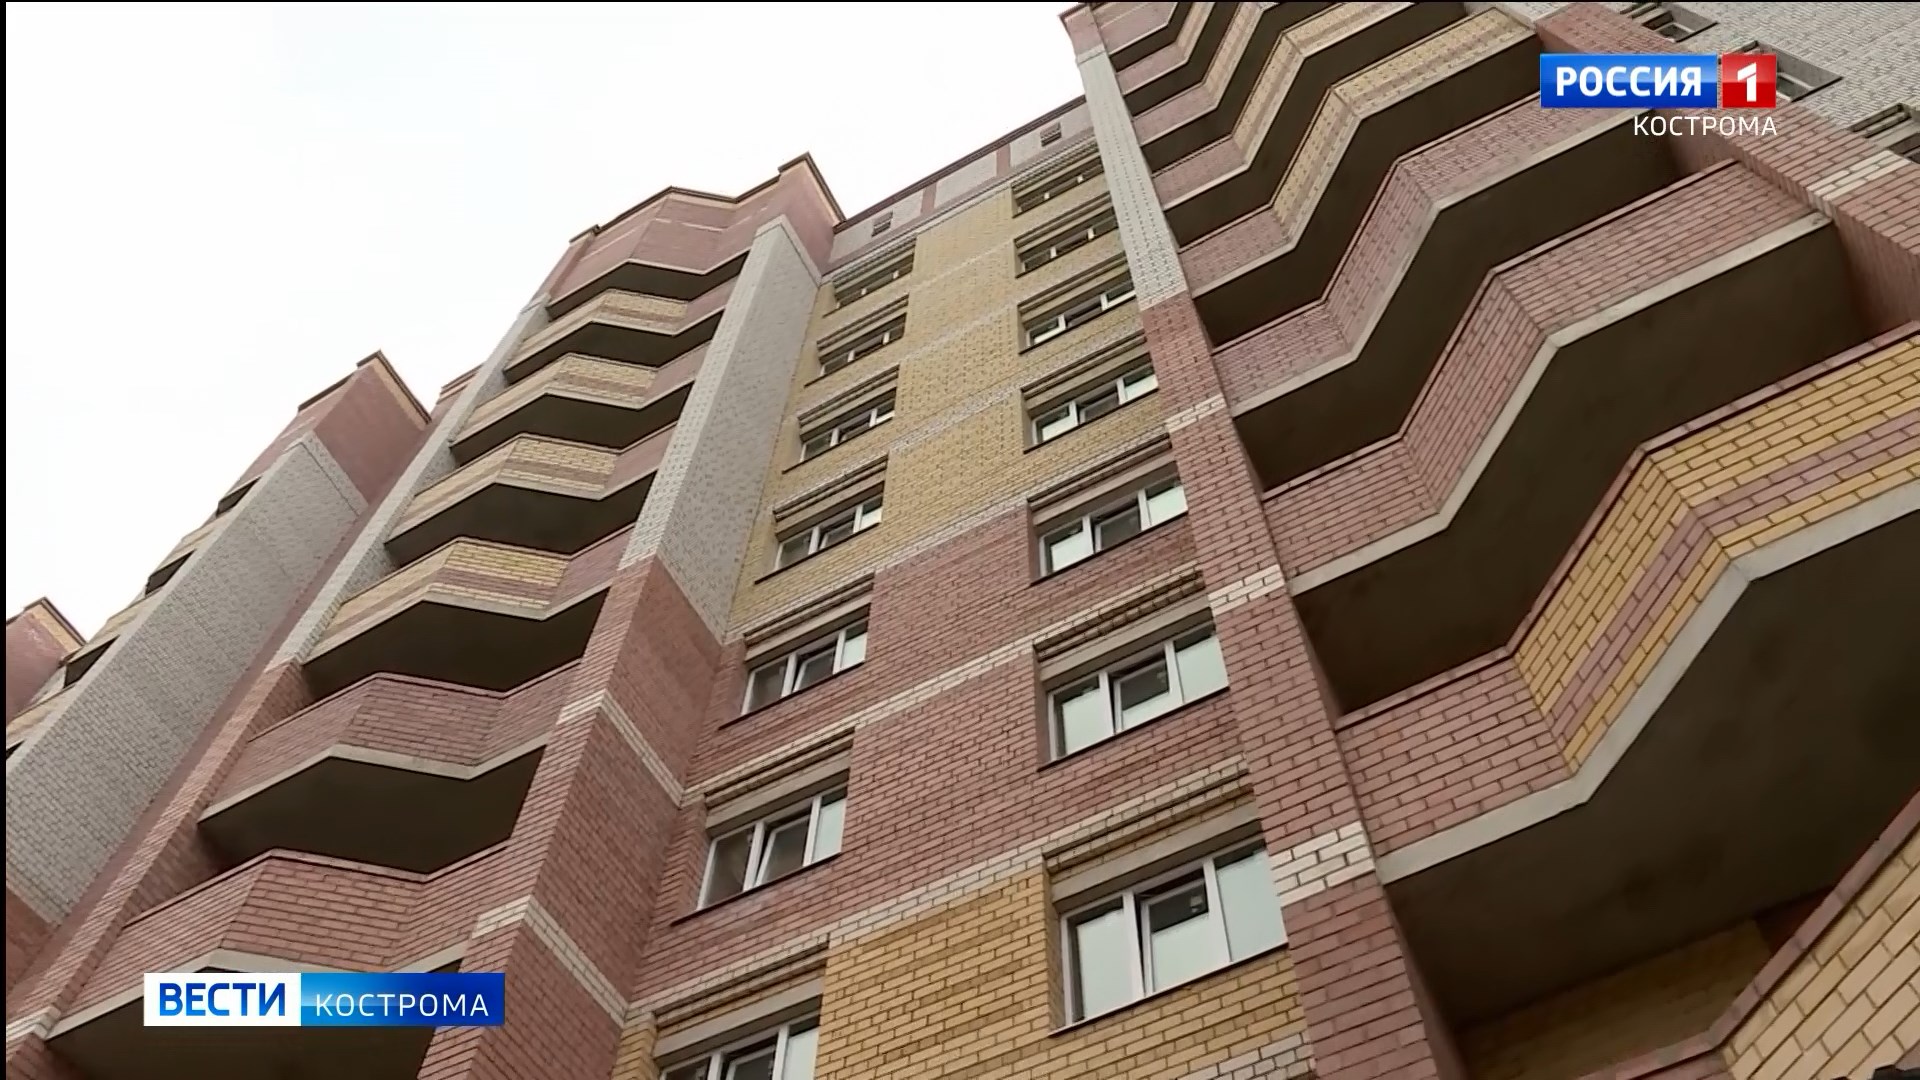 Управляющая компания в Костроме даровала привилегии особенным жильцам